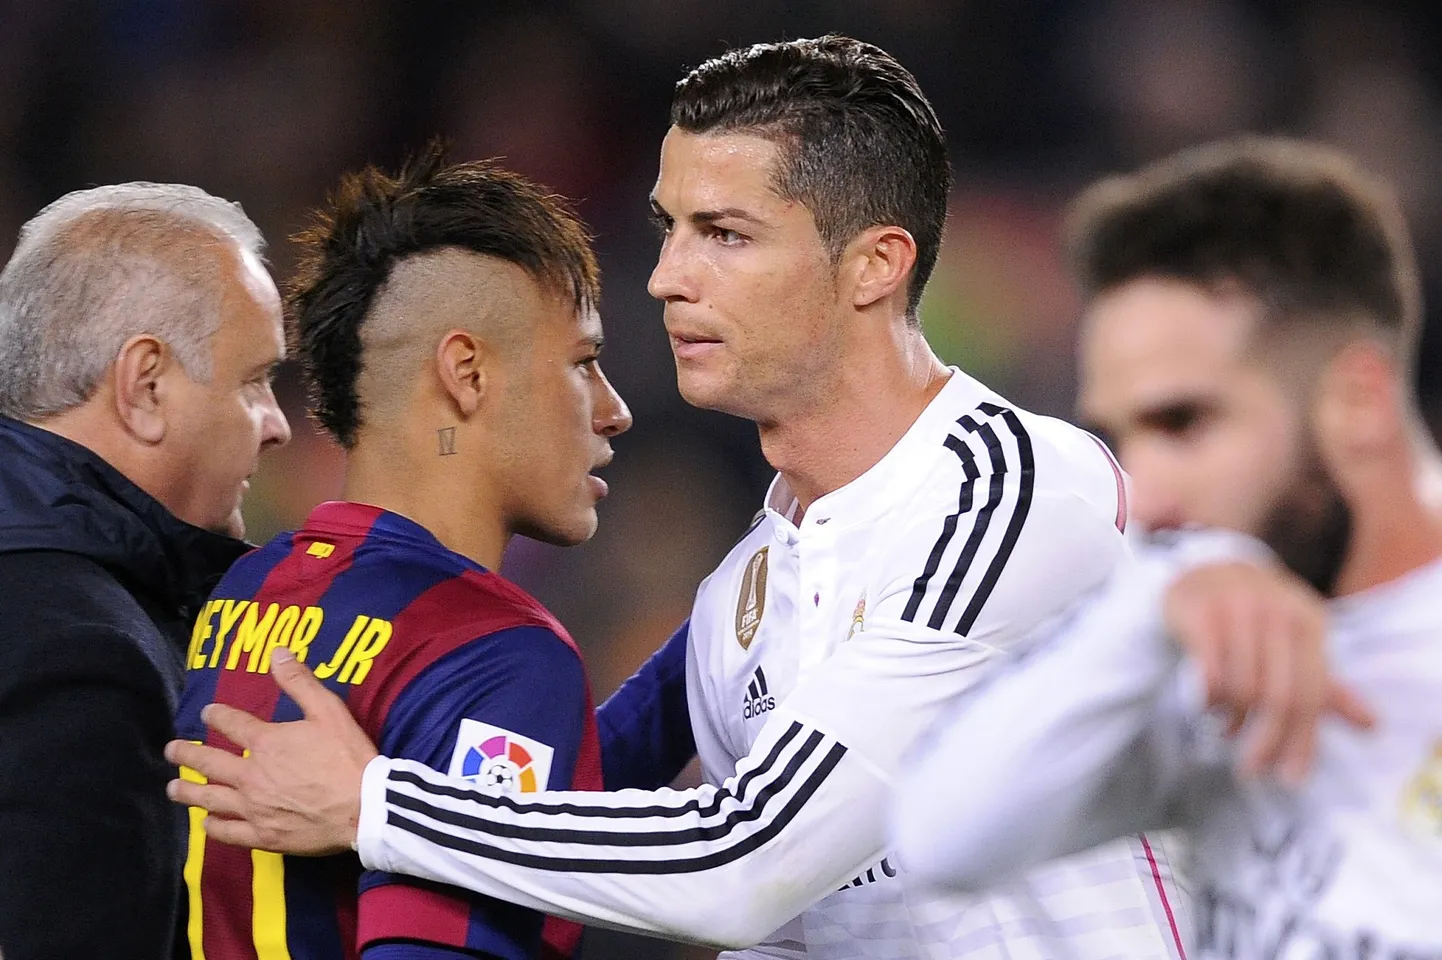 ristiano Ronaldo ja Neymar (vasakul)